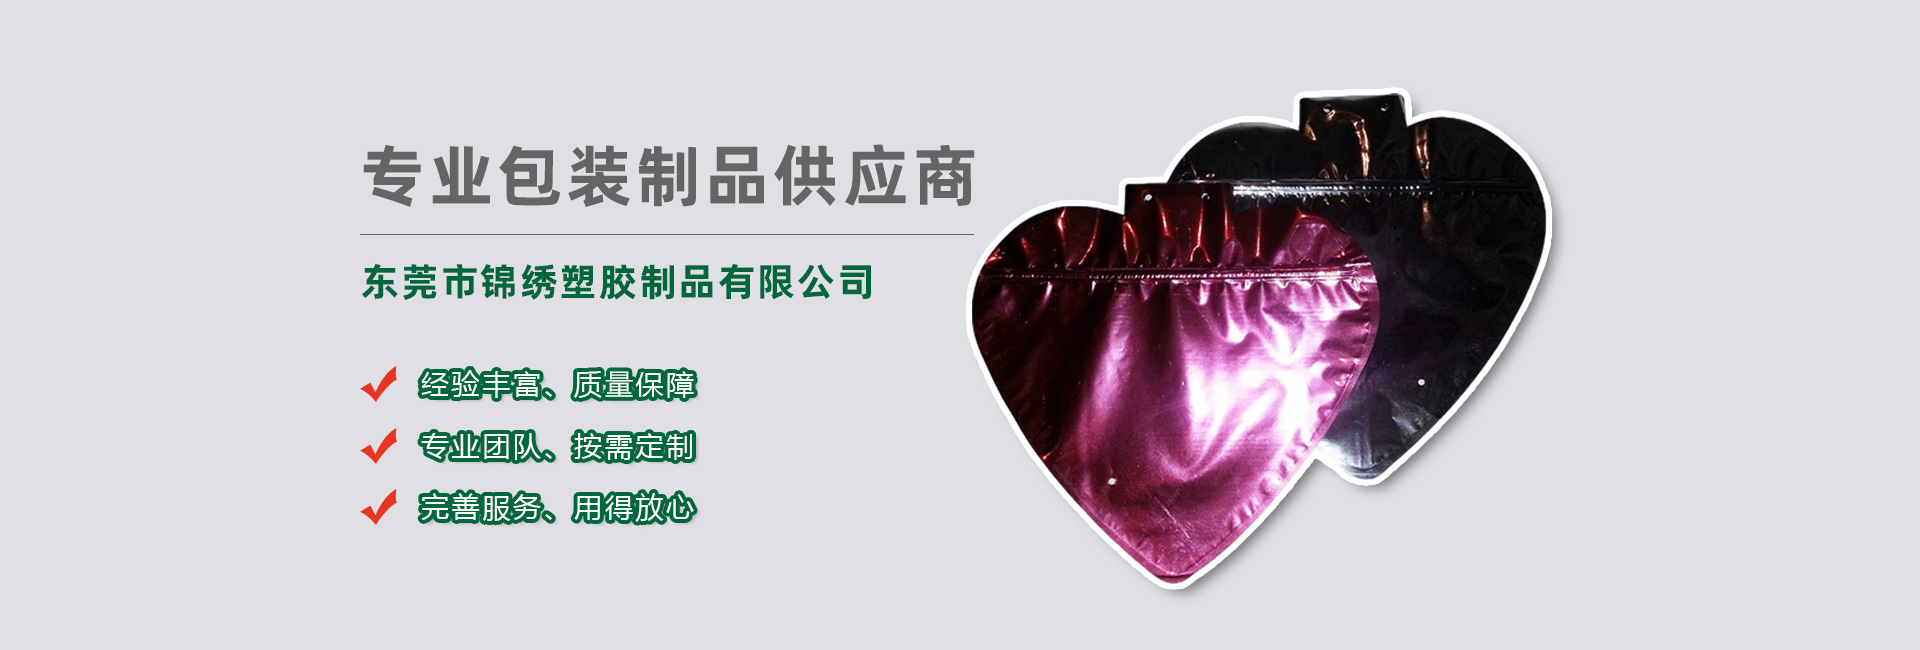 红河食品袋banner